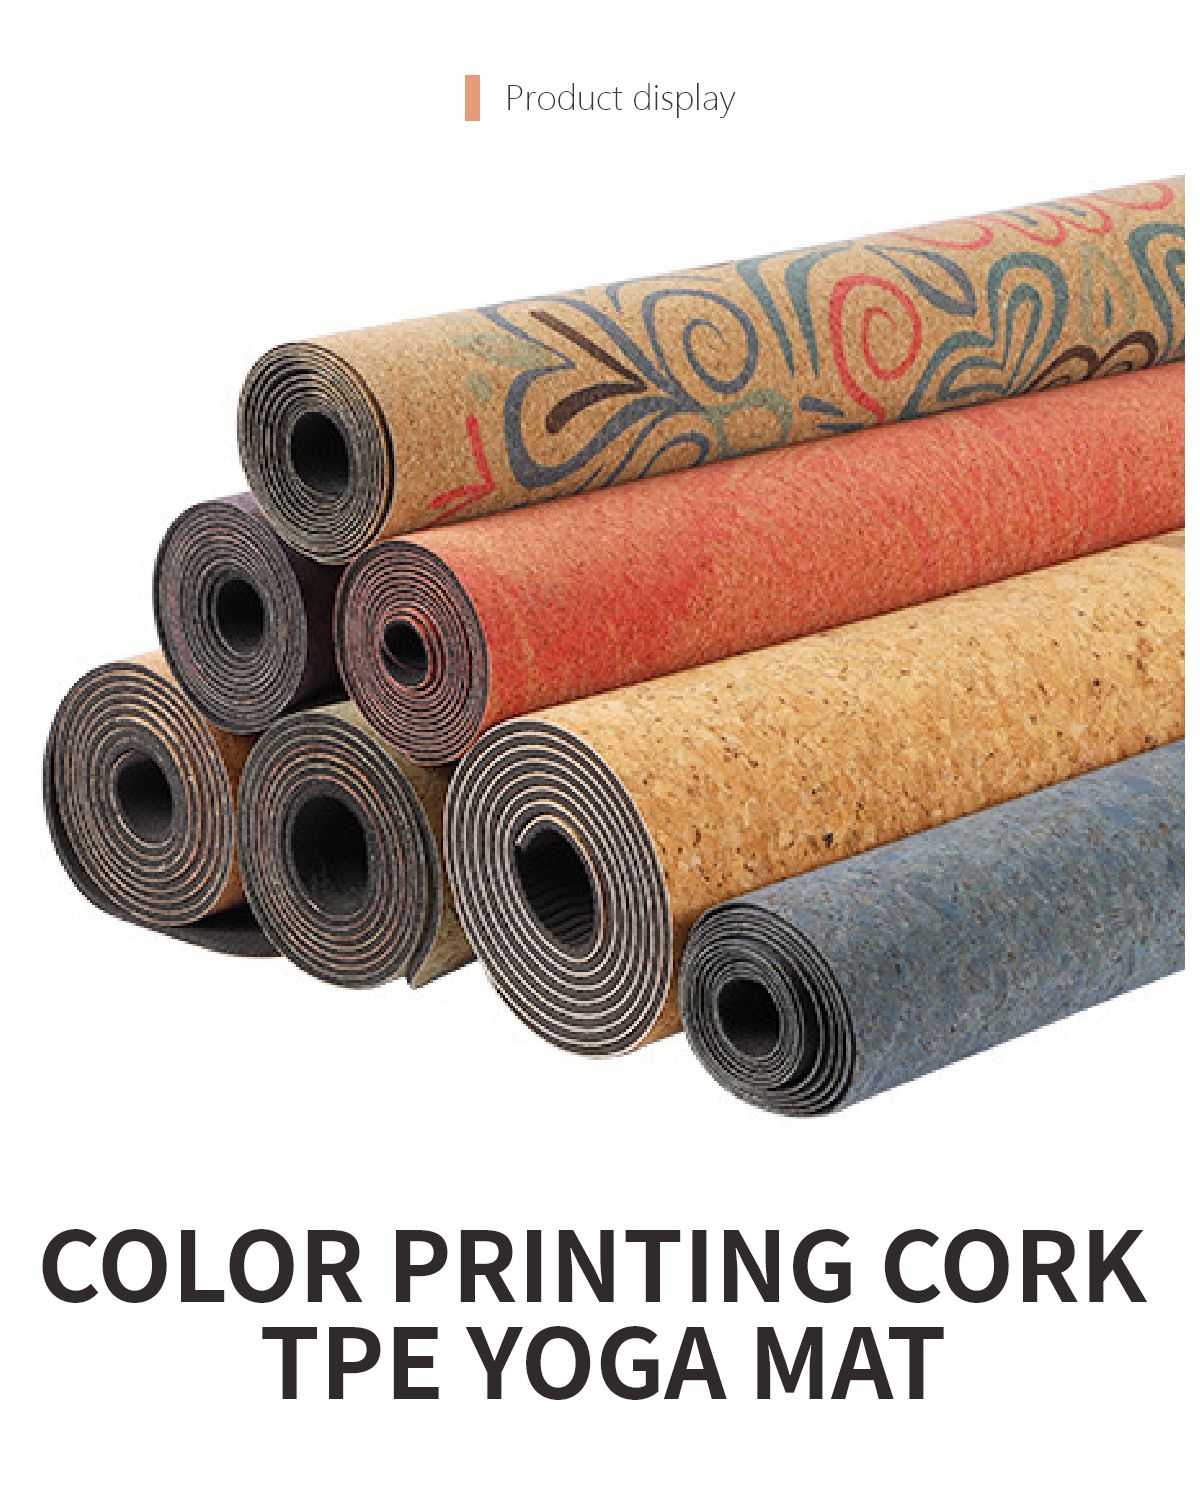 Wholesale Colorful Eco-friendly Cork TPE Yoga Mat